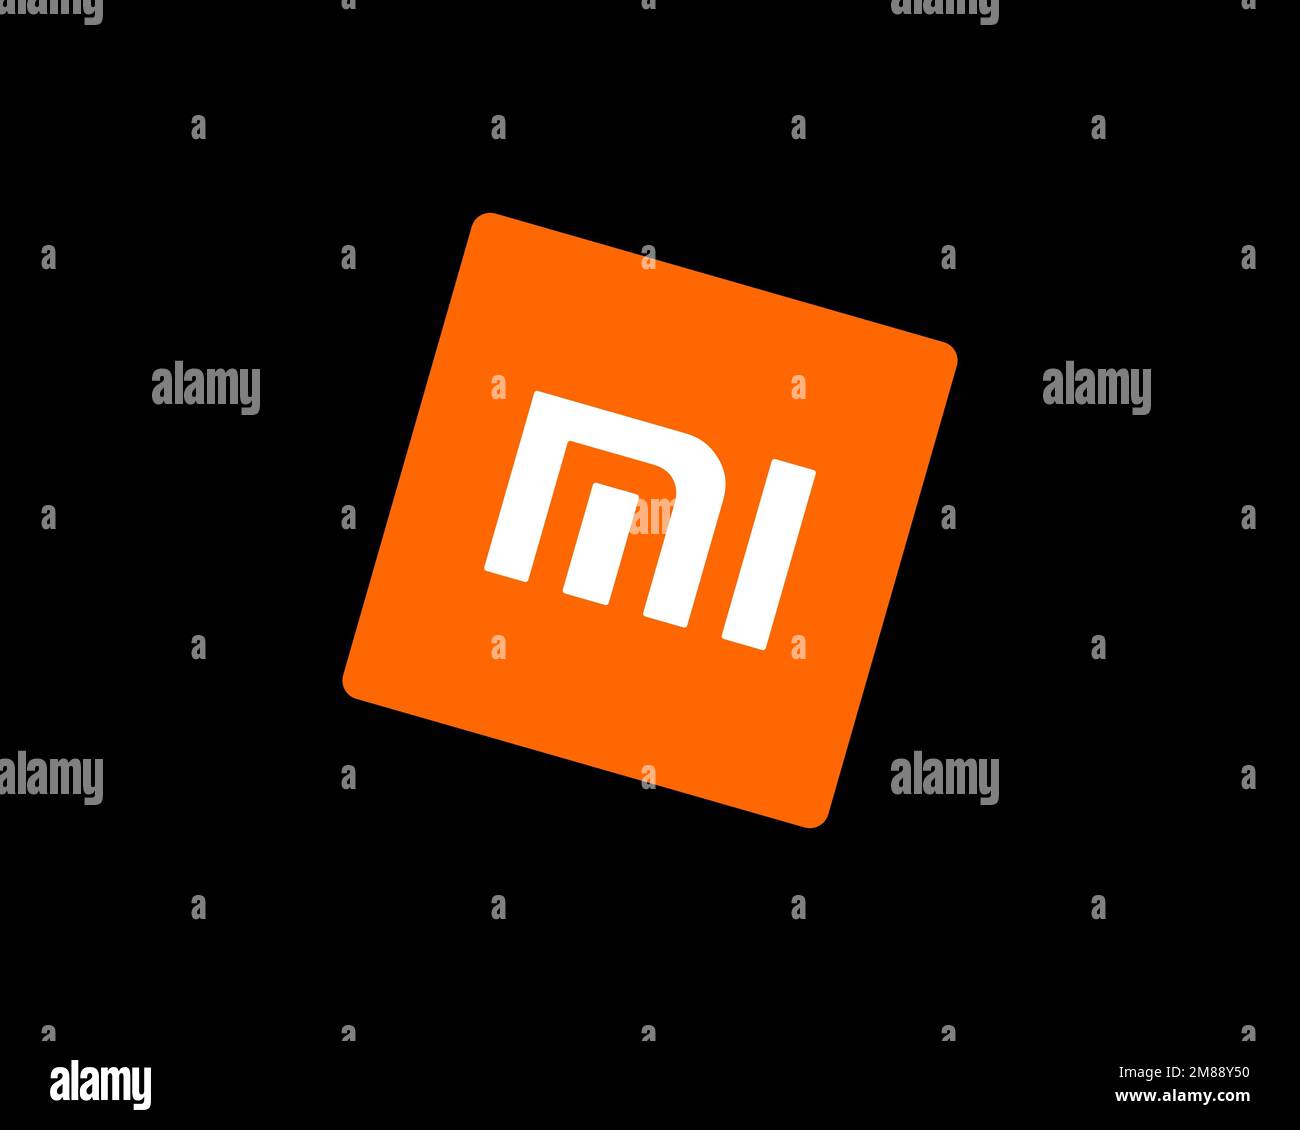 Xiaomi Mi Note 2 là một mẫu điện thoại bắt mắt và đầy cá tính. Hình thức bên ngoài được thiết kế cực kỳ đẹp mắt, cùng với đó là cấu hình mạnh mẽ không thua kém các sản phẩm cao cấp khác. Nếu bạn muốn tìm hiểu thêm về chiếc điện thoại này, hãy tham khảo ảnh sản phẩm.